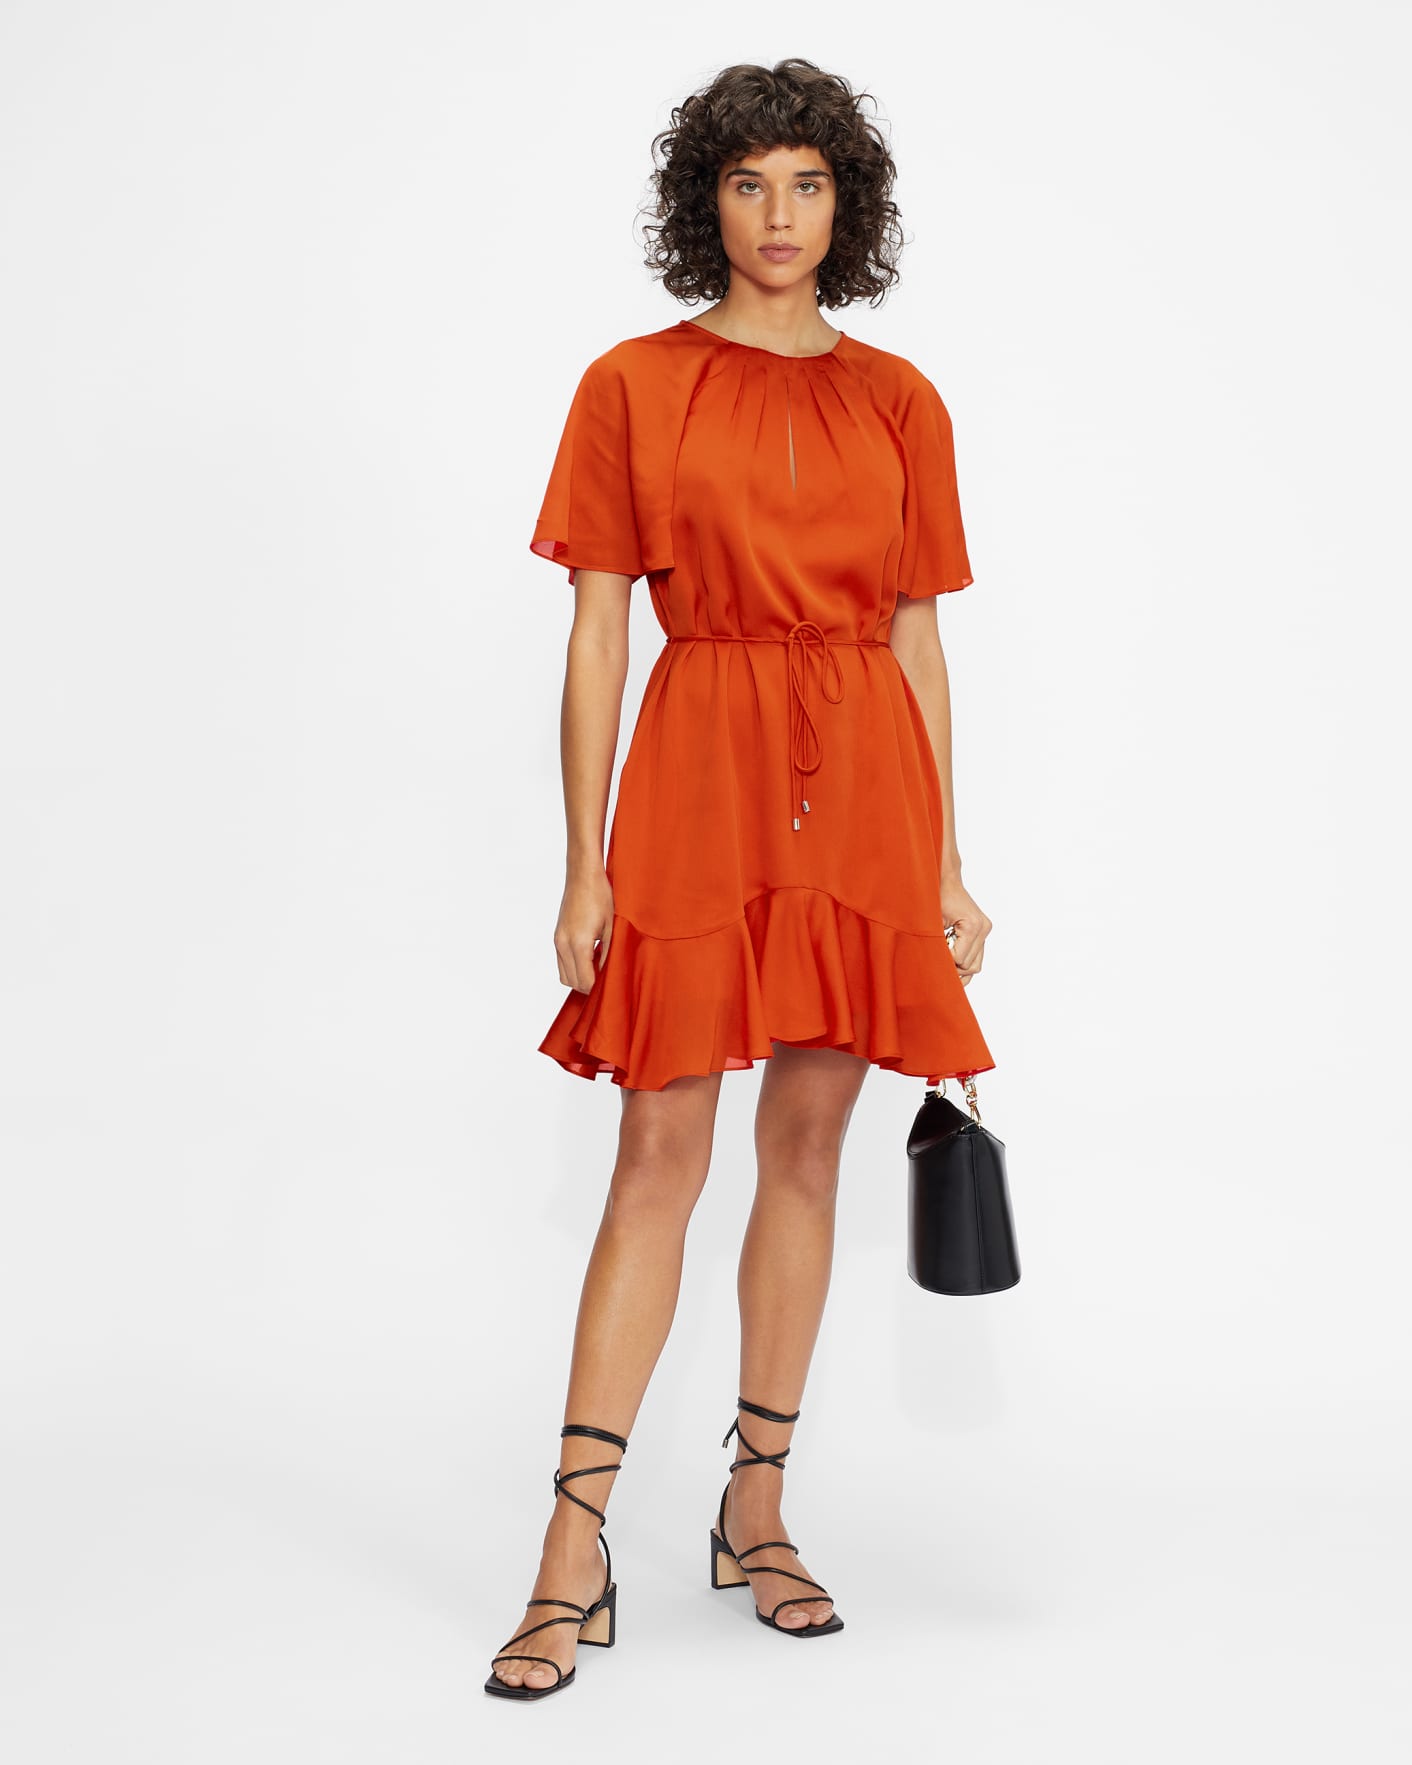 Ted Baker Dresses Orange | vlr.eng.br